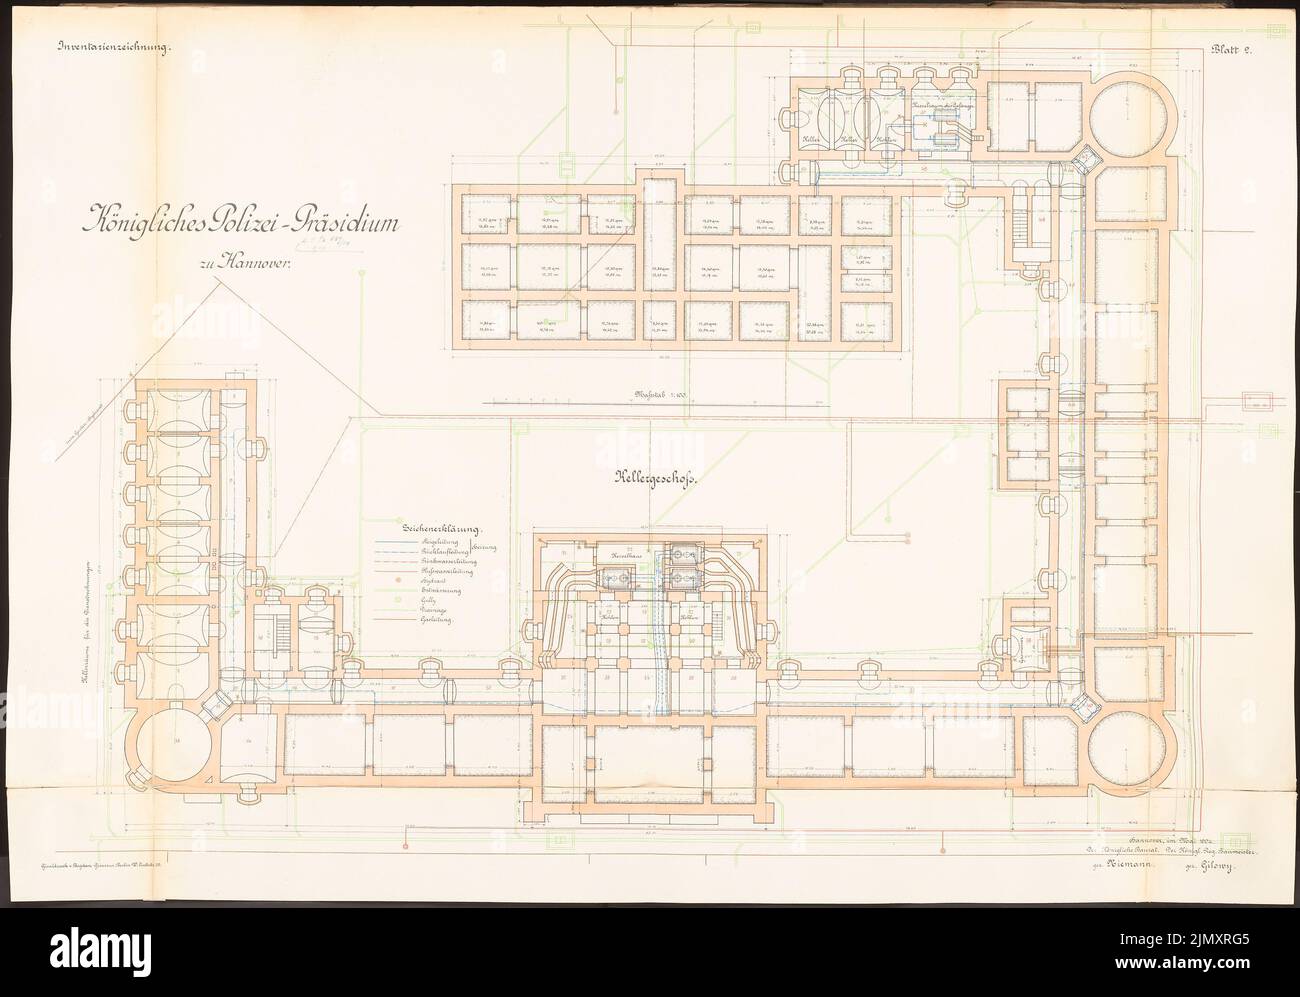 Zastrau, quartier général de la police à Hanovre (env 1903): Plan d'étage KG 1: 100. Lithographie colorée sur papier, 72 x 103,1 cm (y compris les bords de numérisation) Banque D'Images